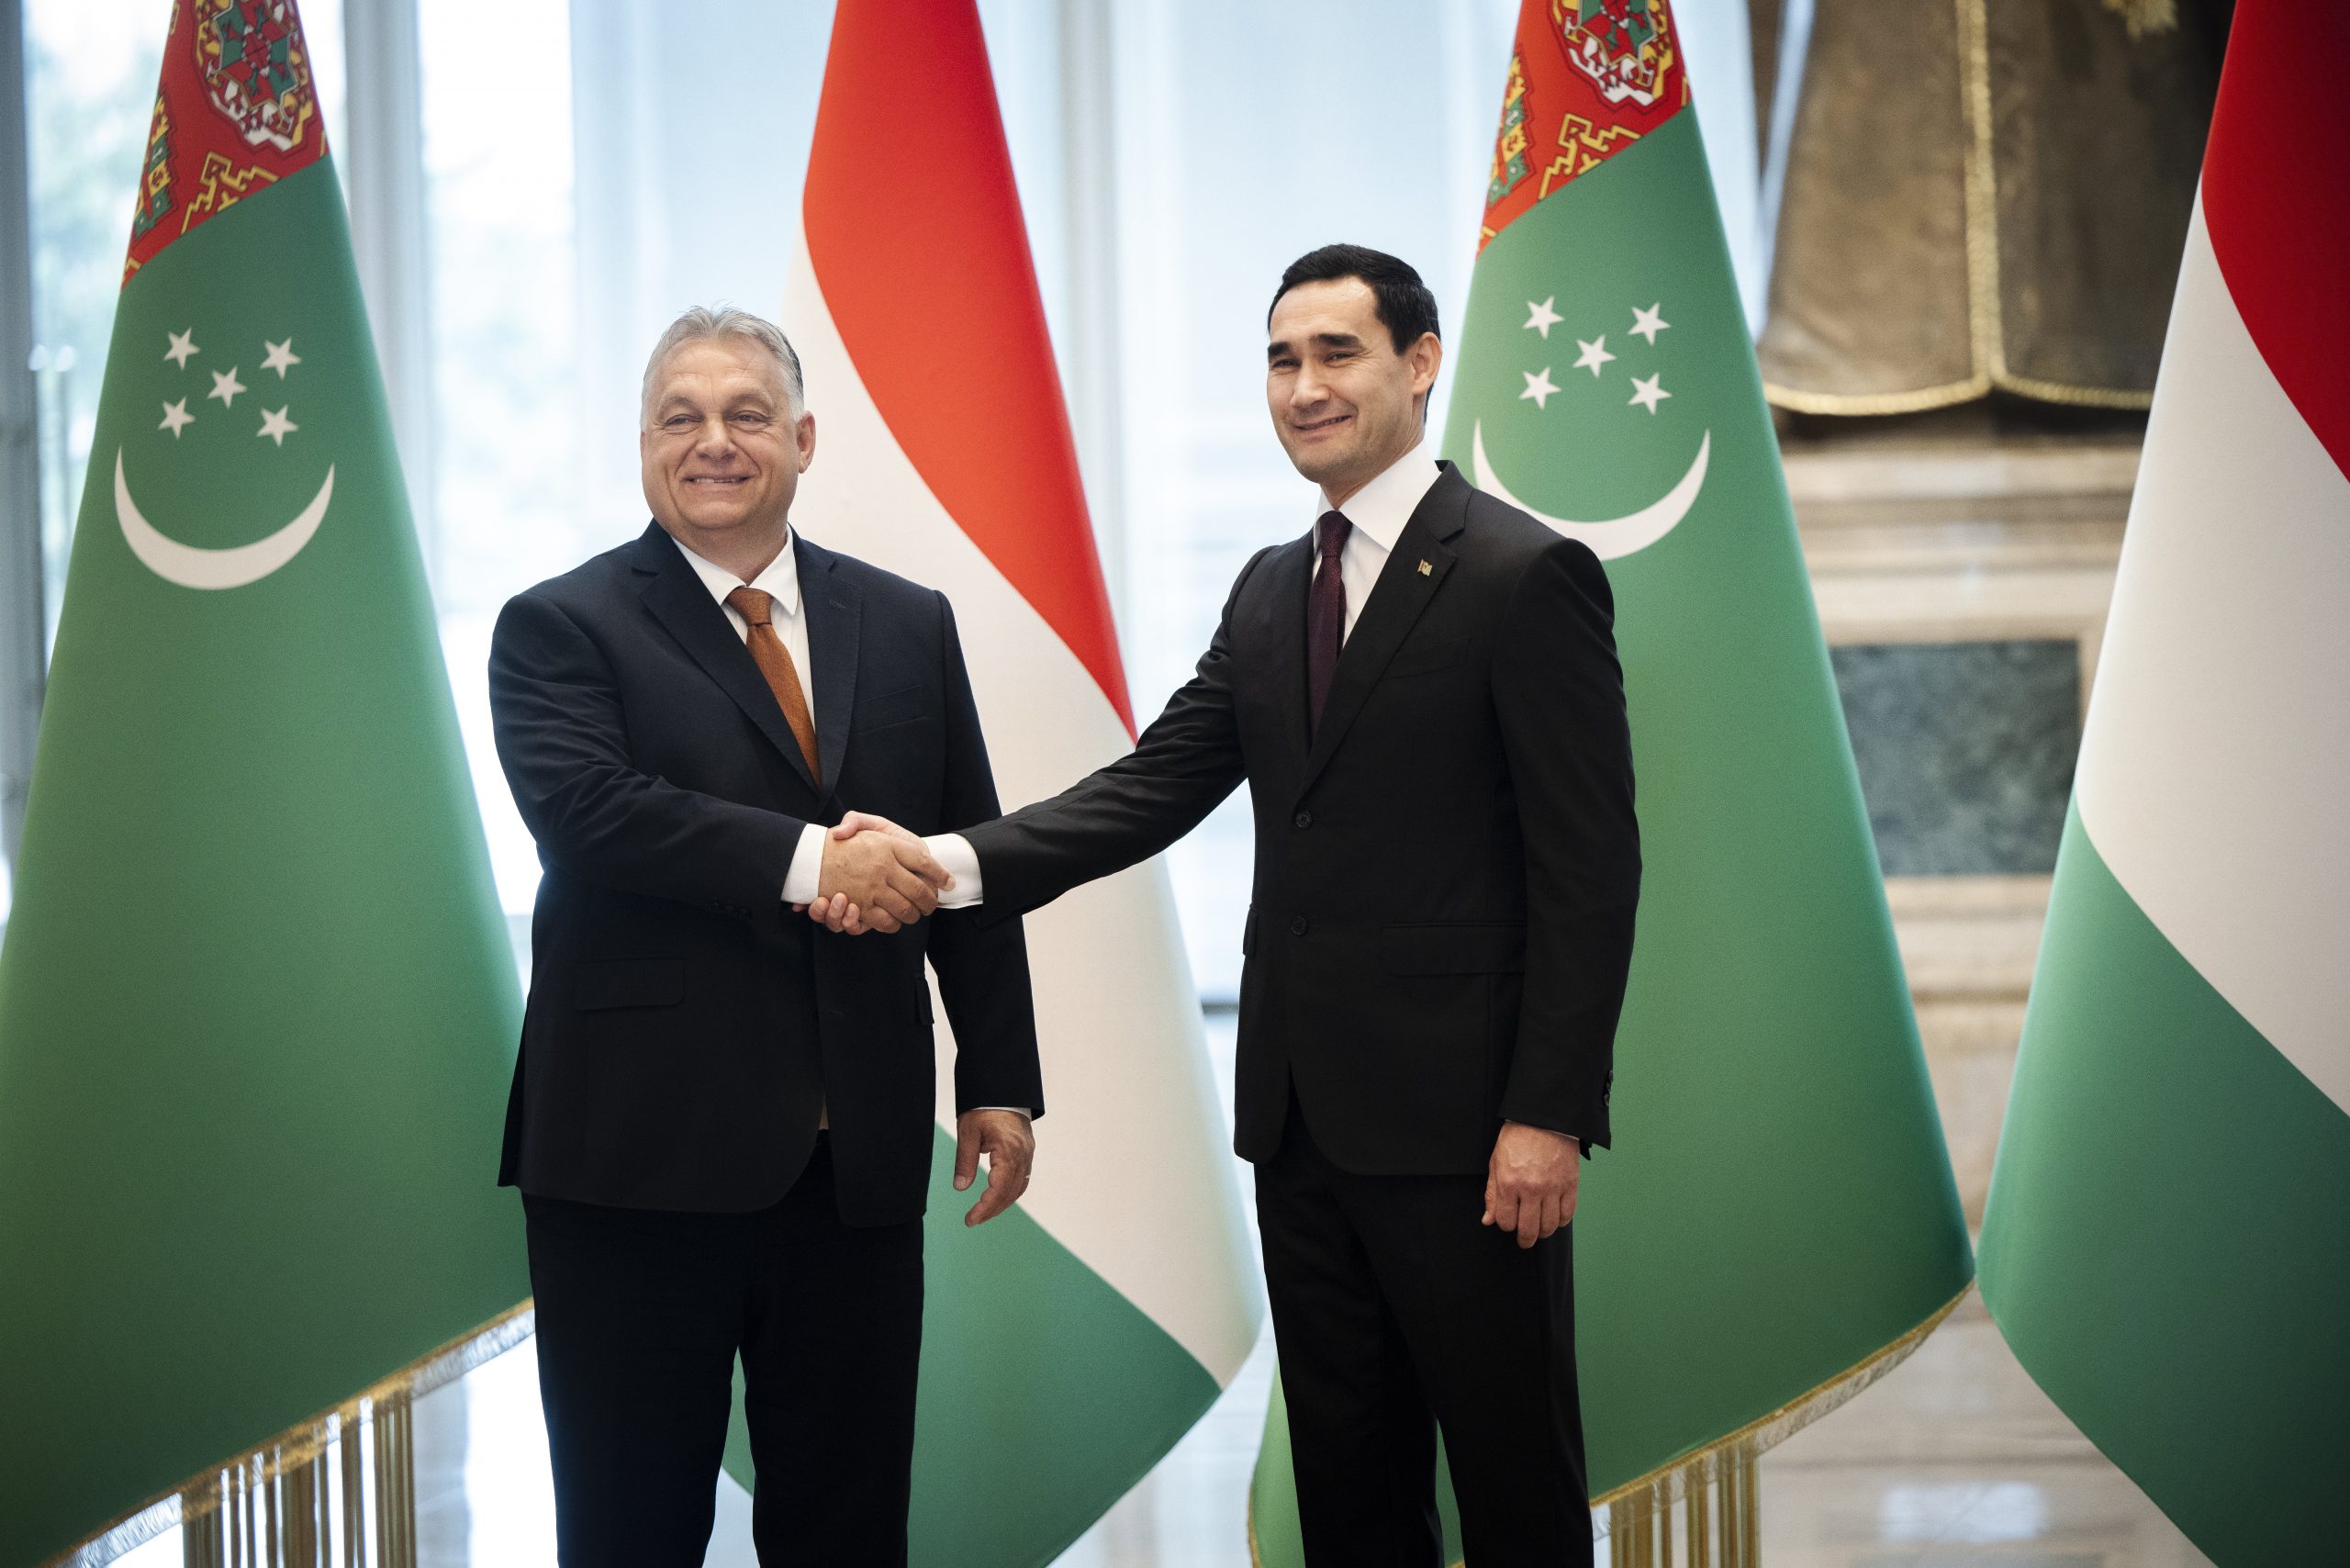 Viktor Orbán zu Gesprächen in Turkmenistan